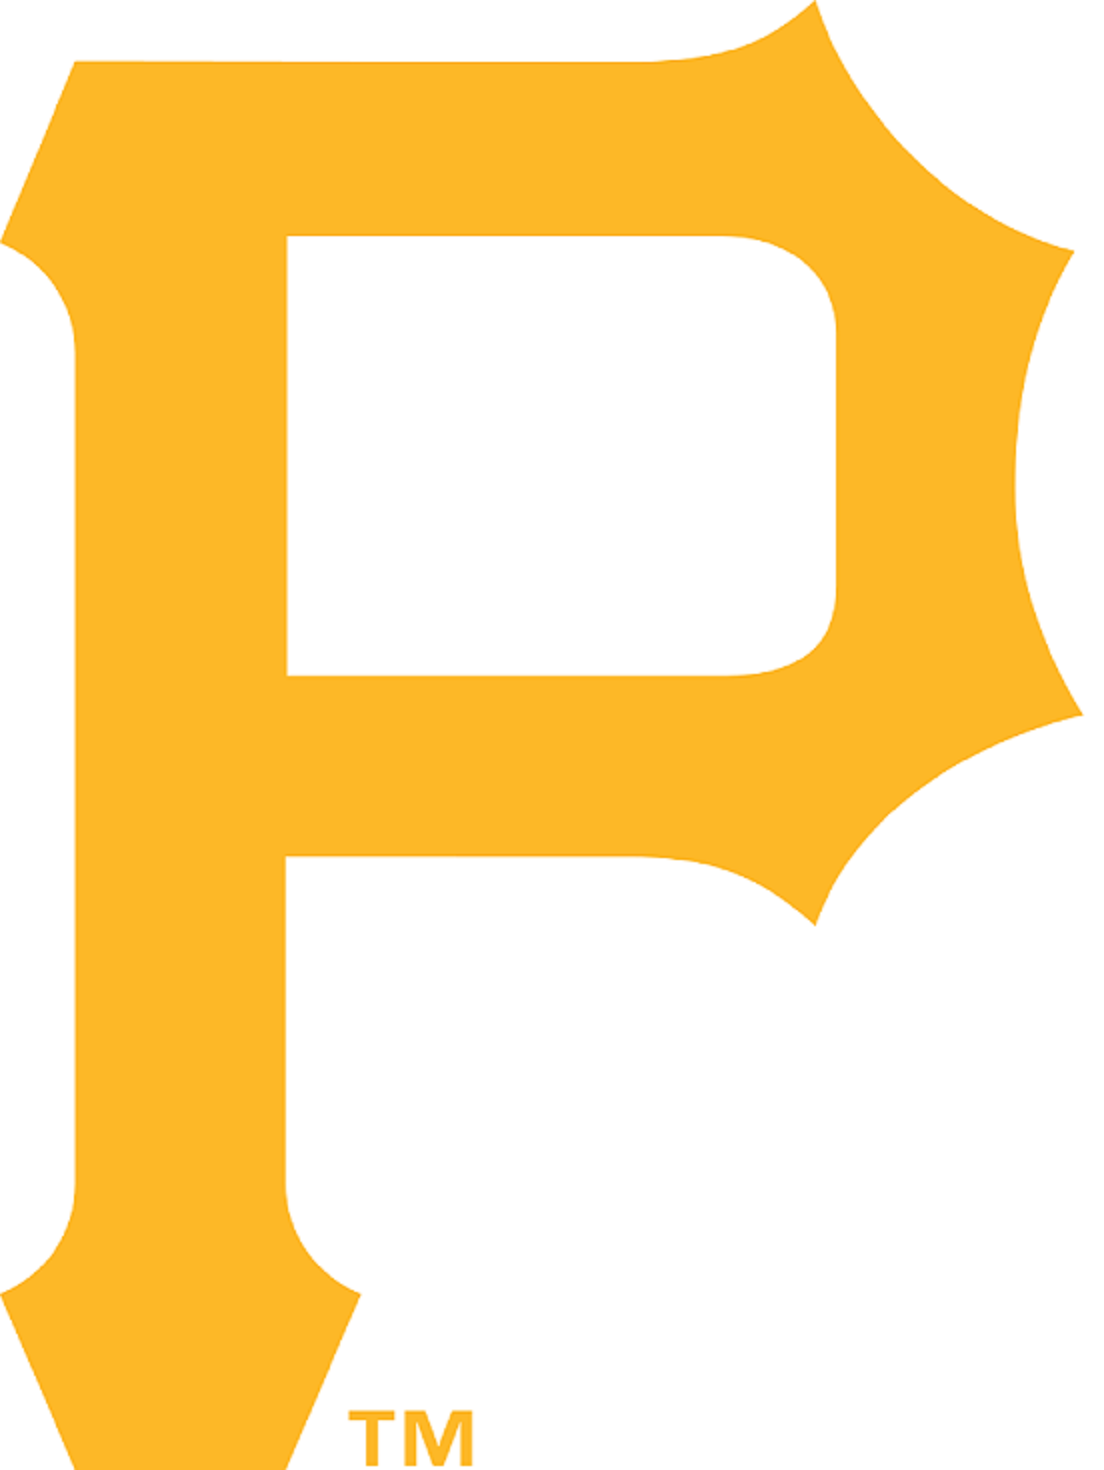 pittsburgh_pirates_logo3